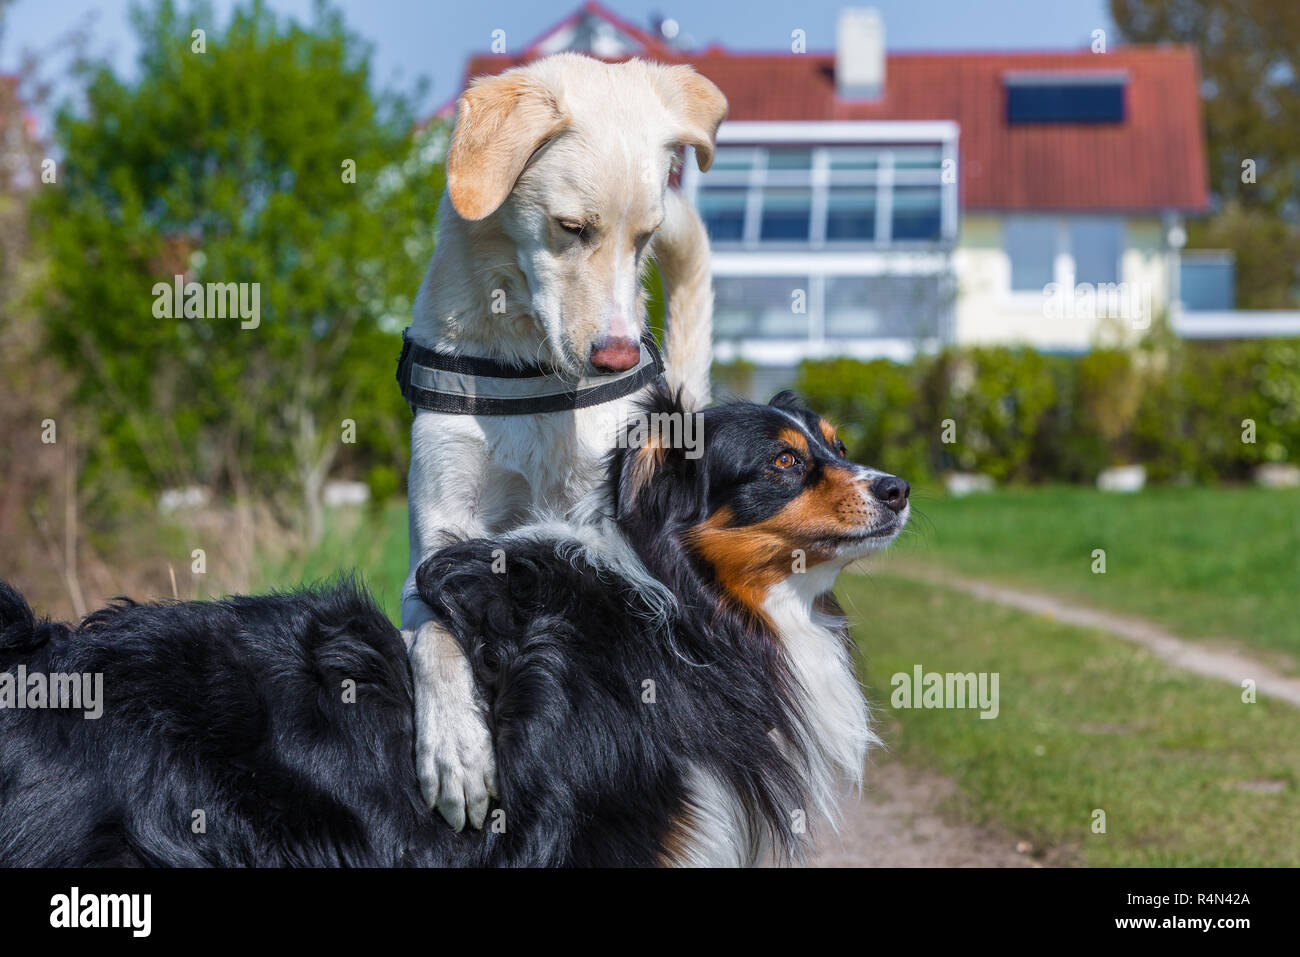 dog shows dominant behavior Stock Photo